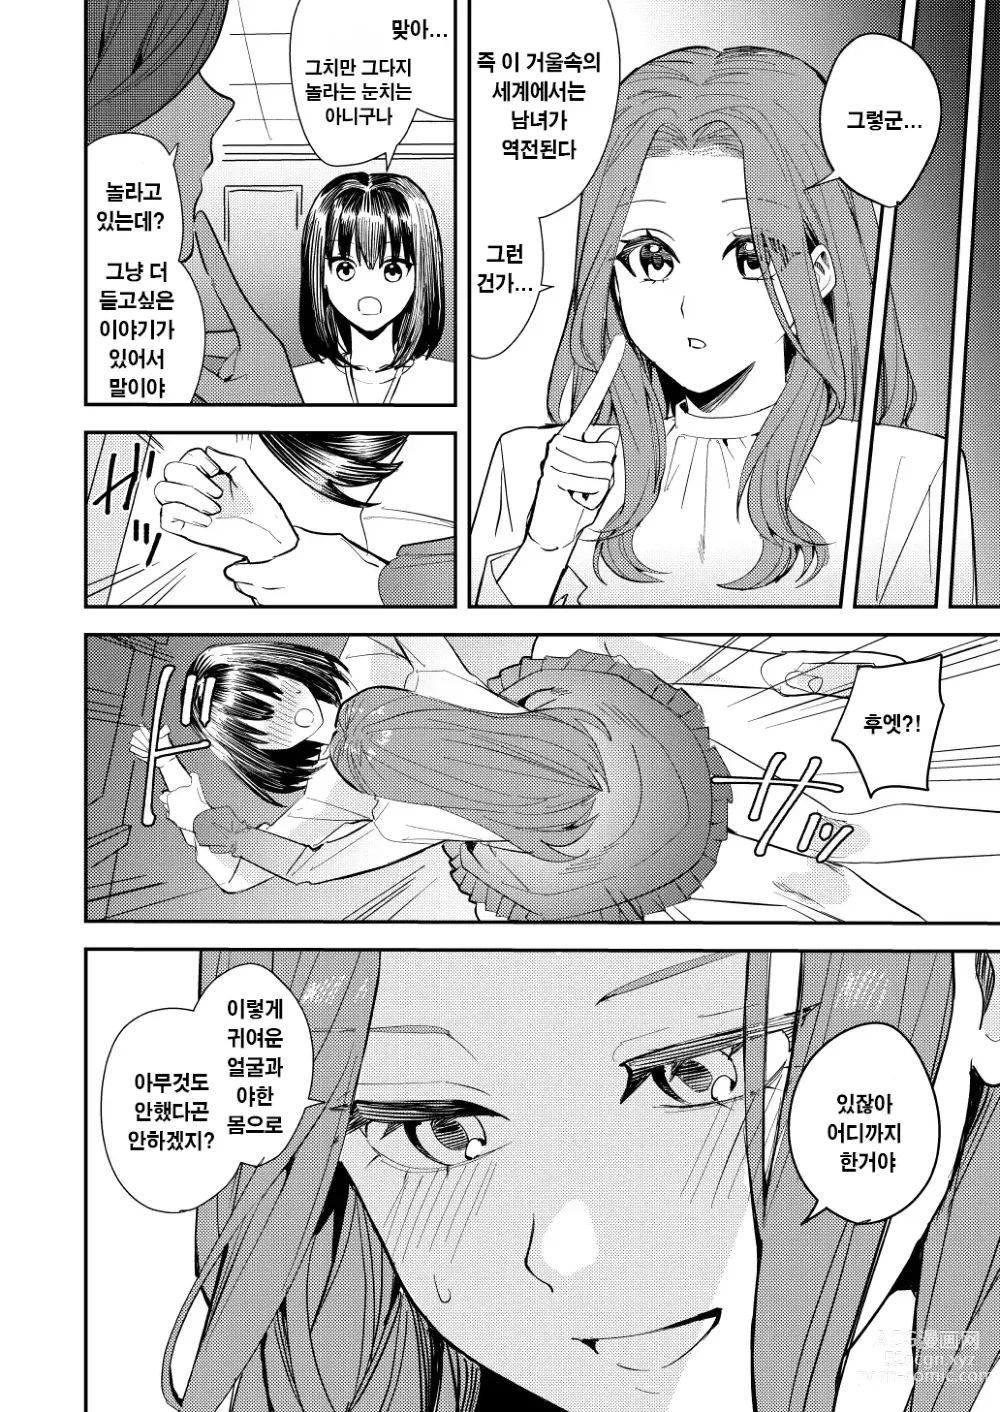 Page 17 of doujinshi 나는 거울의 나라에서 여자로 바뀐다 ~성별 반전 세계에서 여자의 쾌감을 탐하는 이야기~